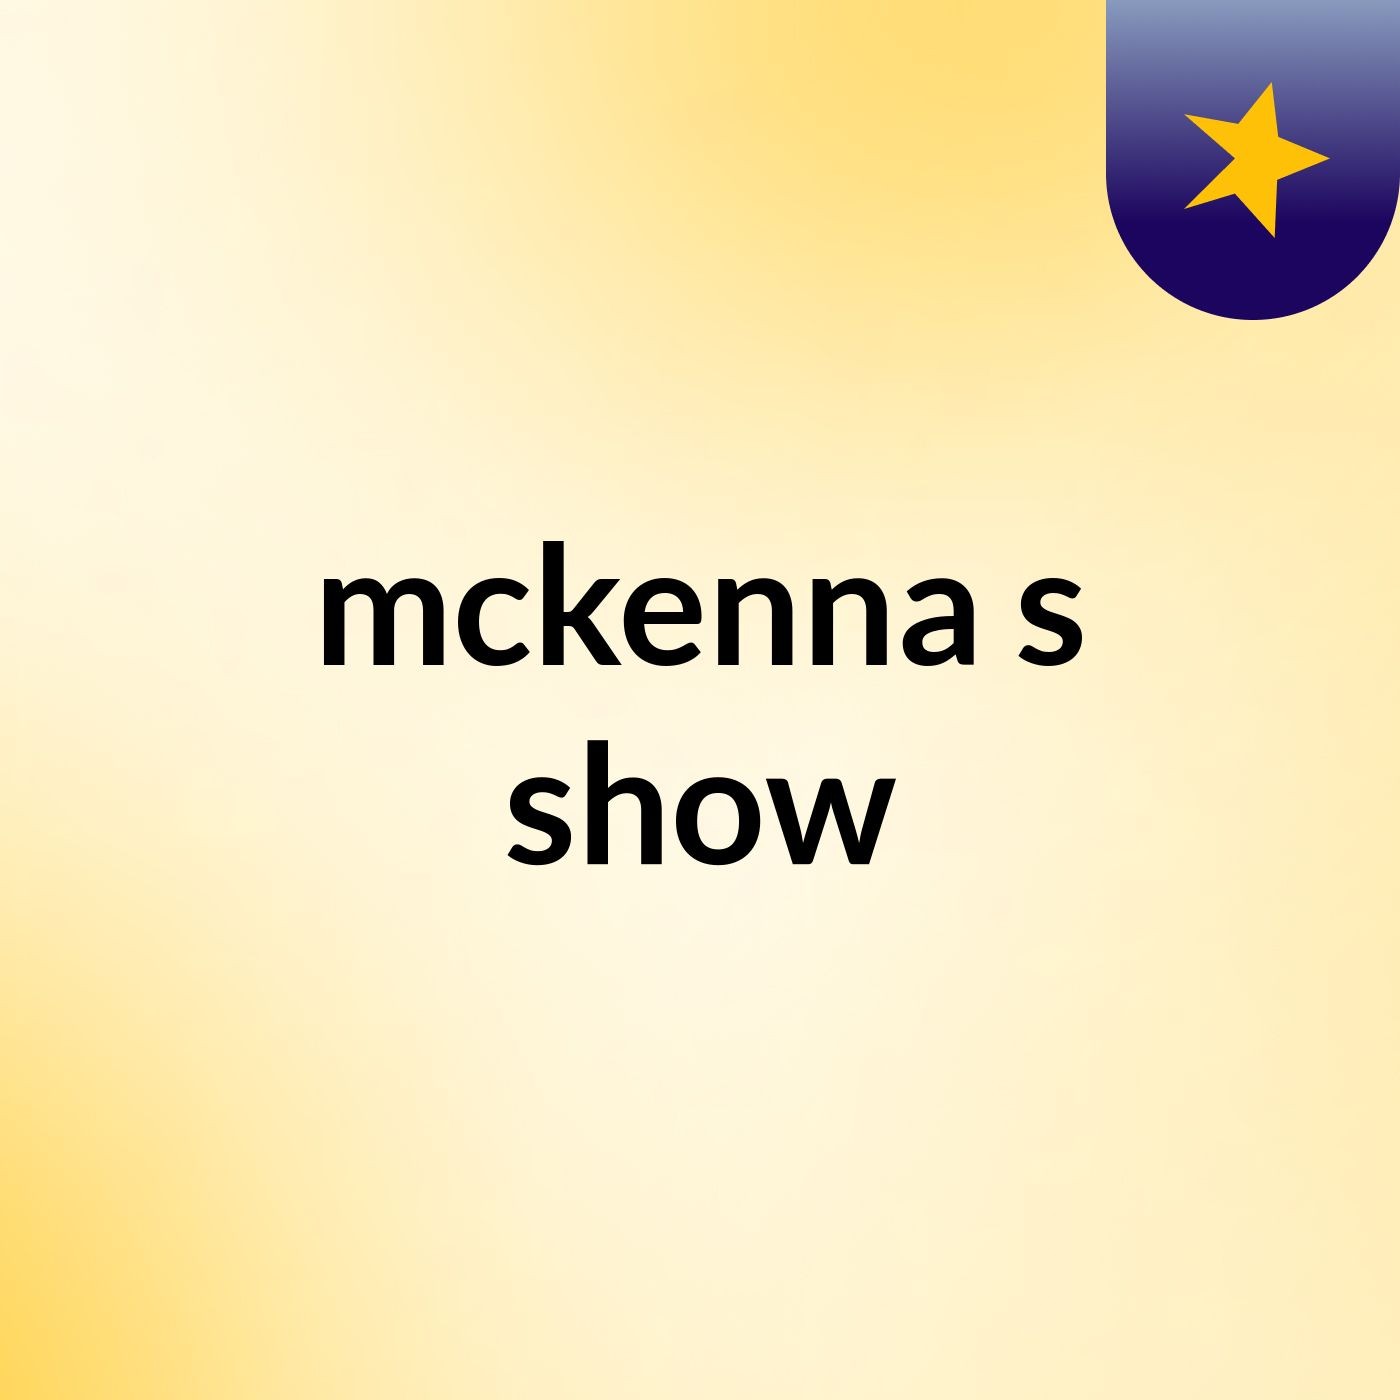 mckenna's show